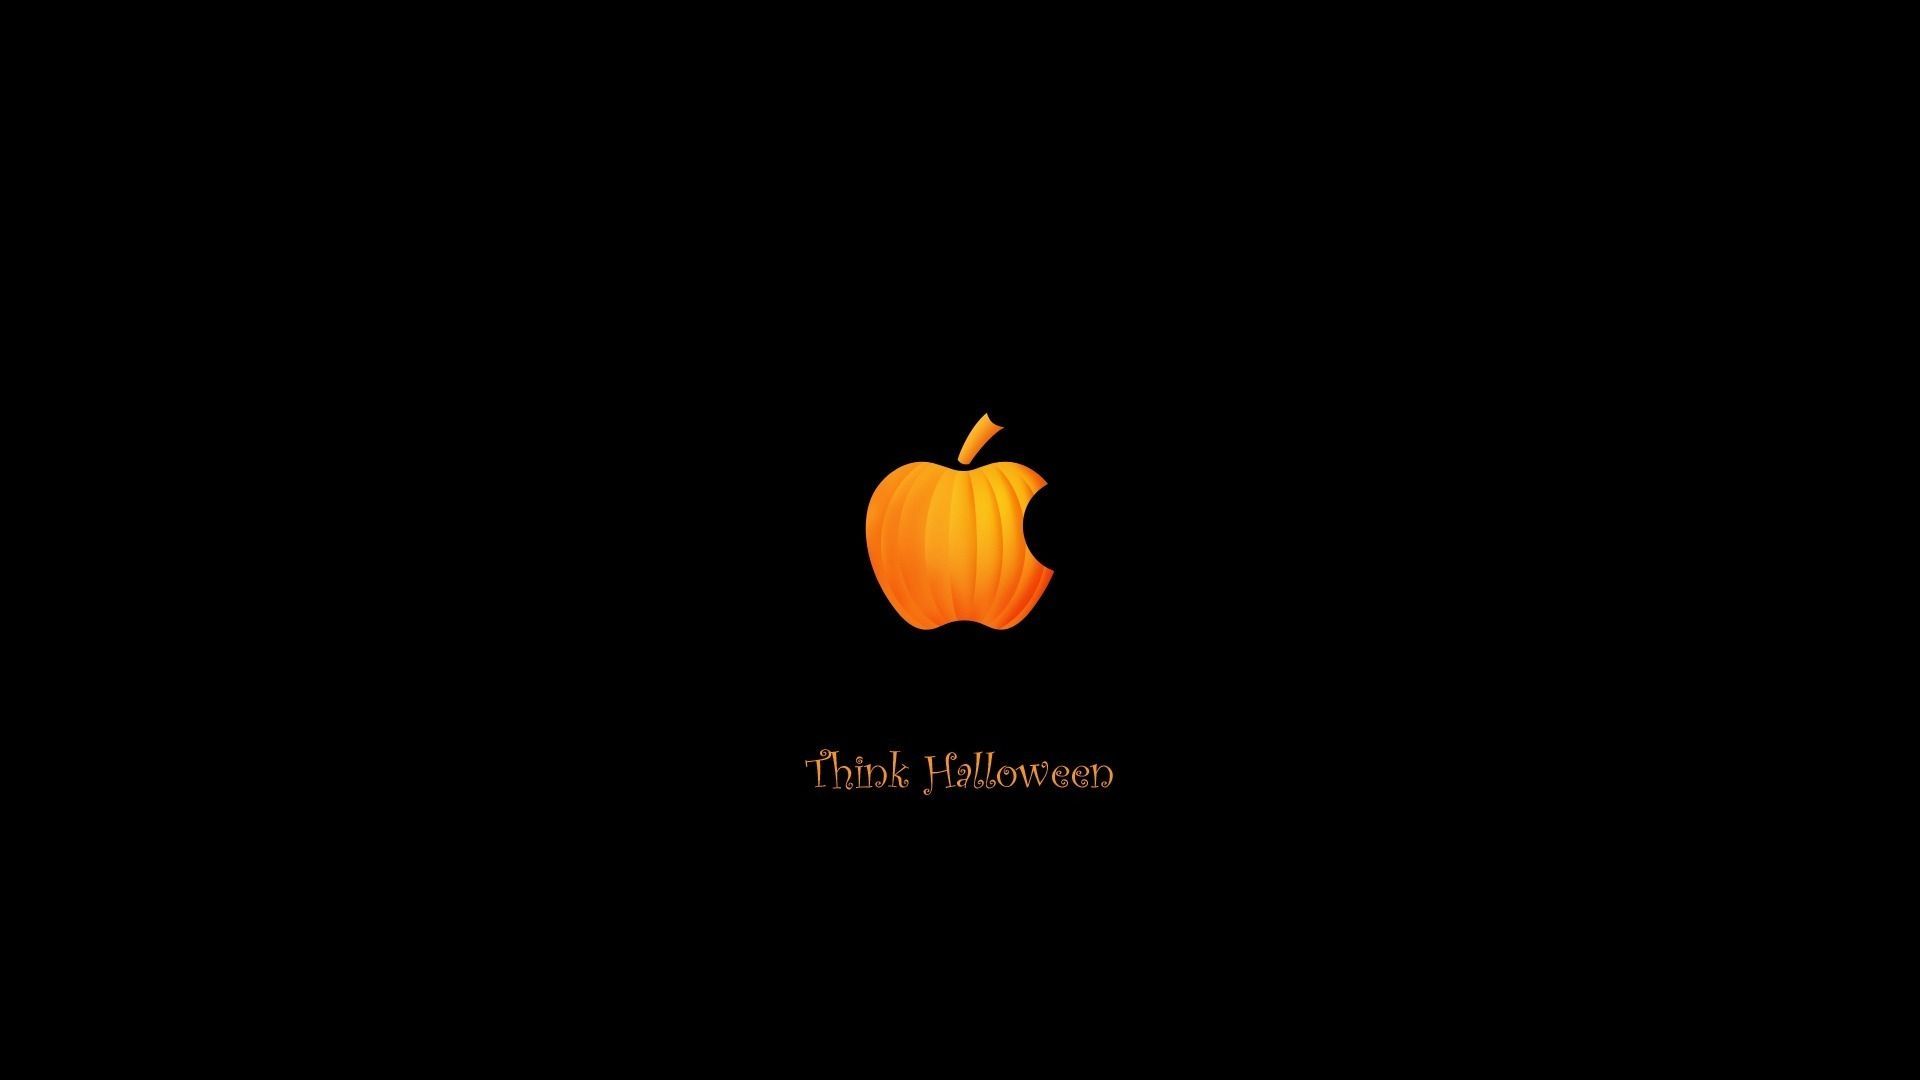 View source image. Macbook desktop background, Halloween desktop wallpaper, Halloween background tumblr